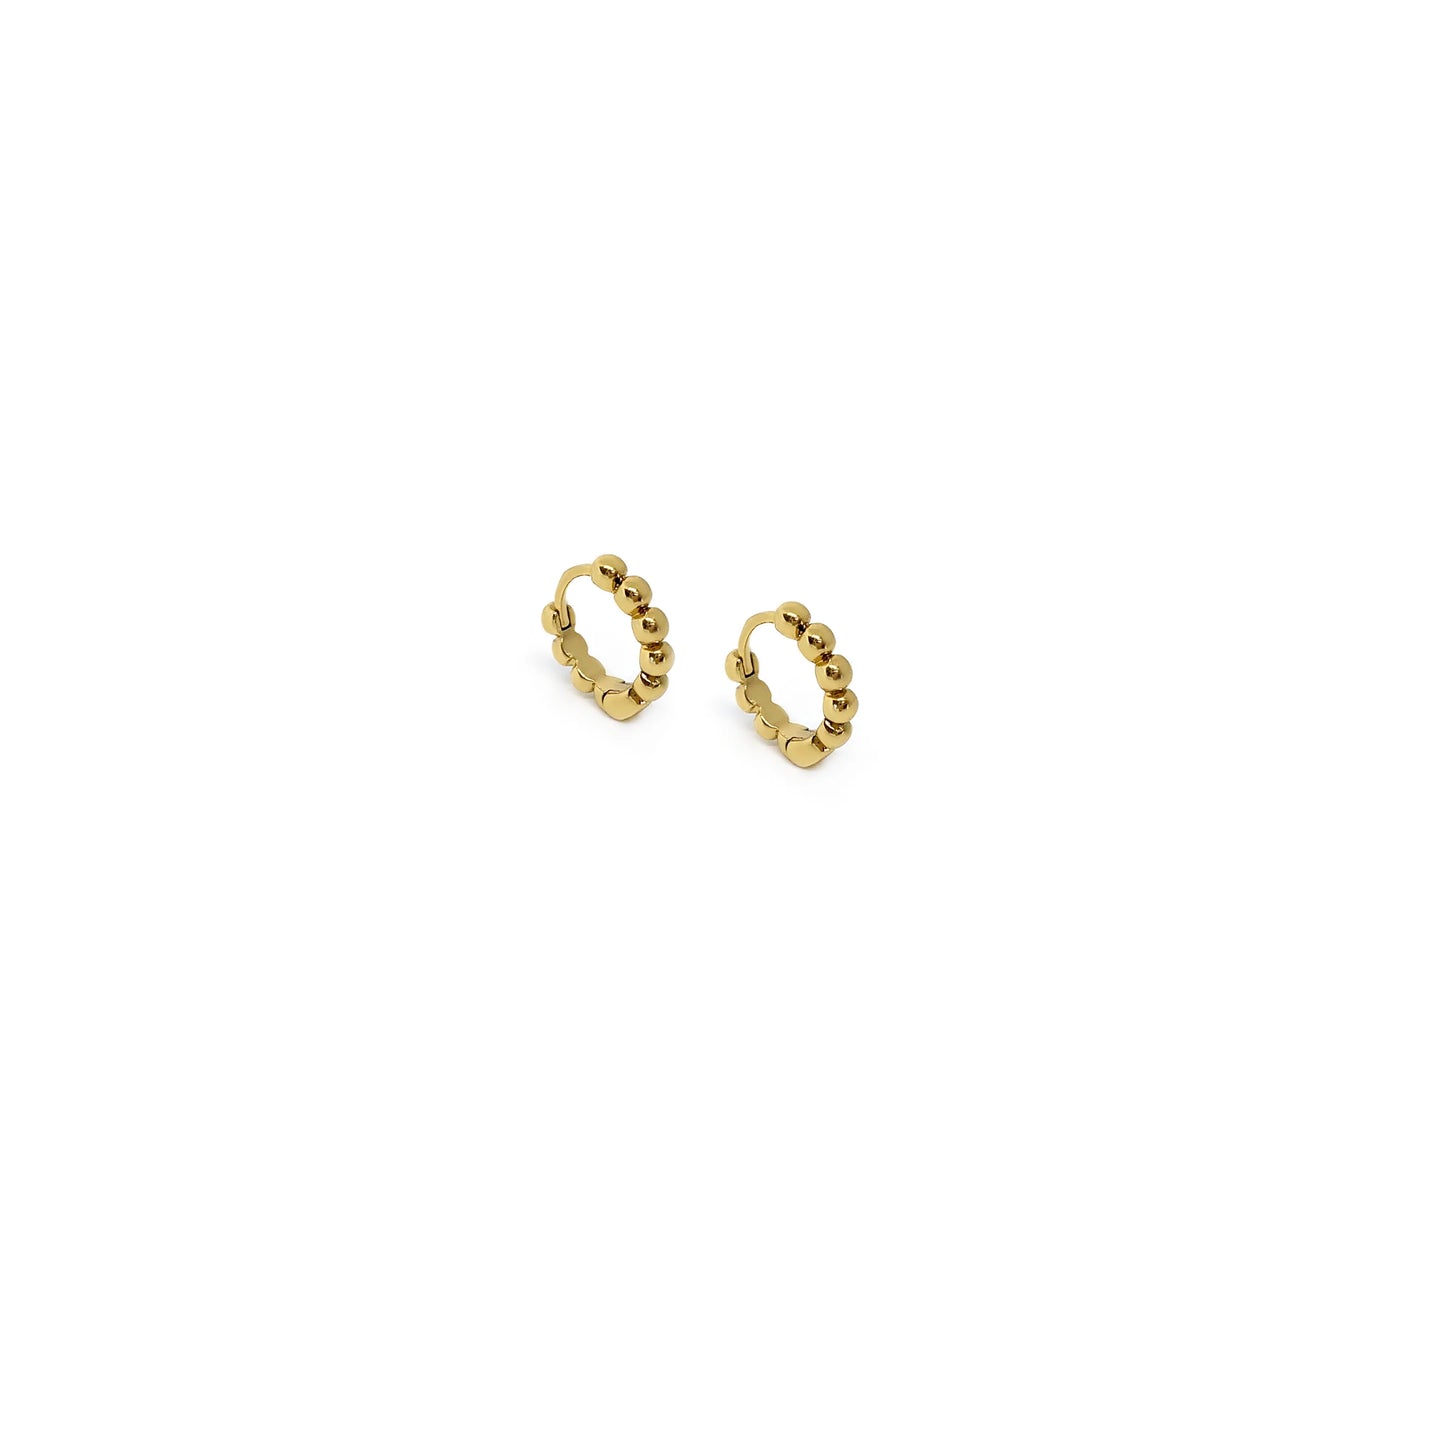 Verona Earrings - Textured Hoop